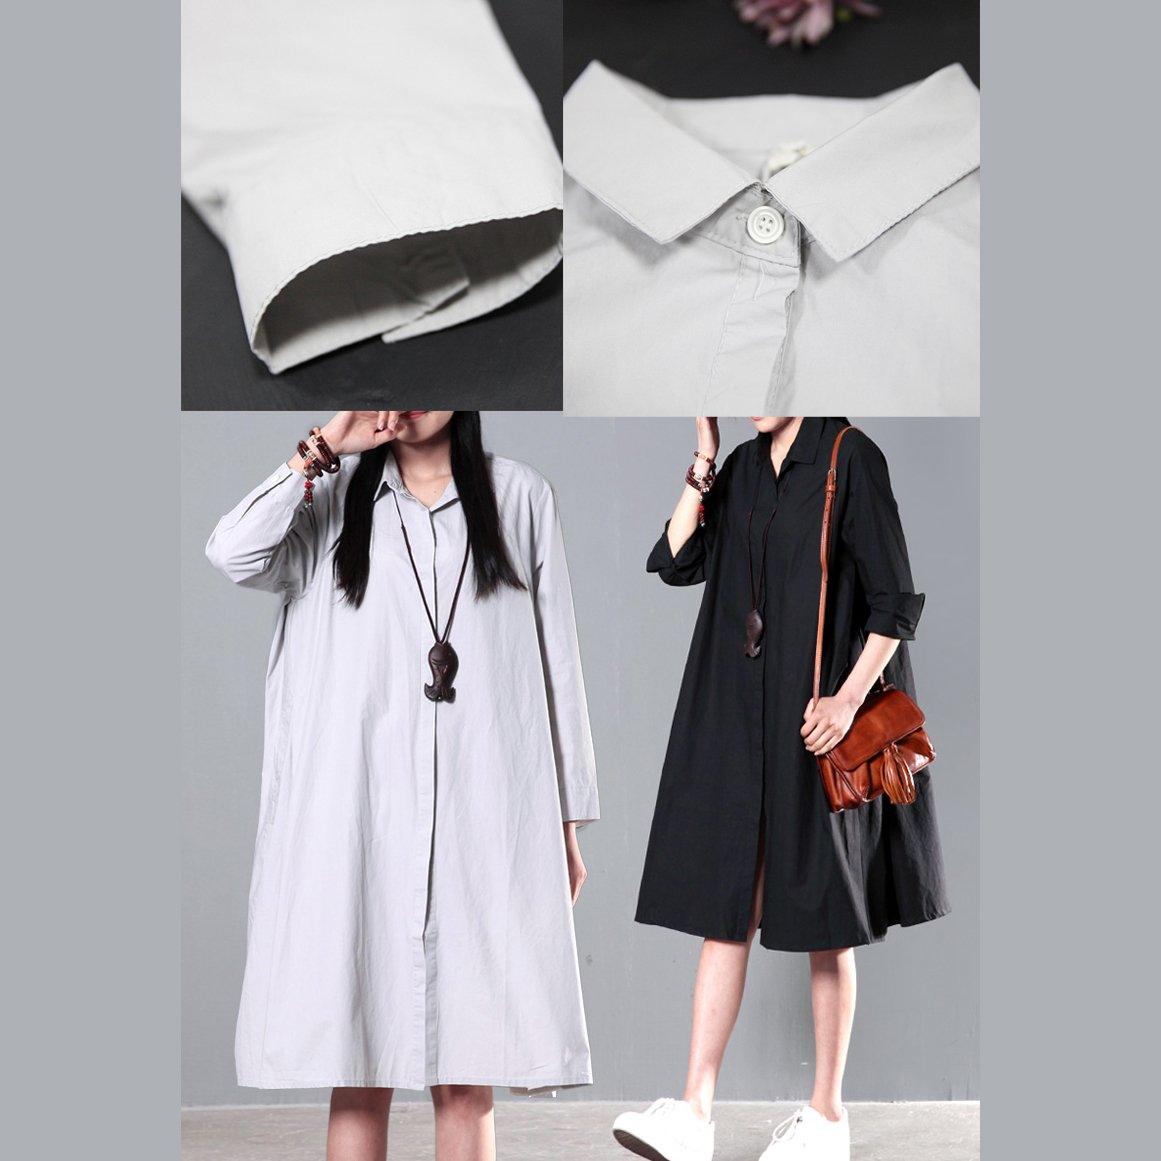 Black spring cotton dress plus size cotton blouse shirt - Omychic